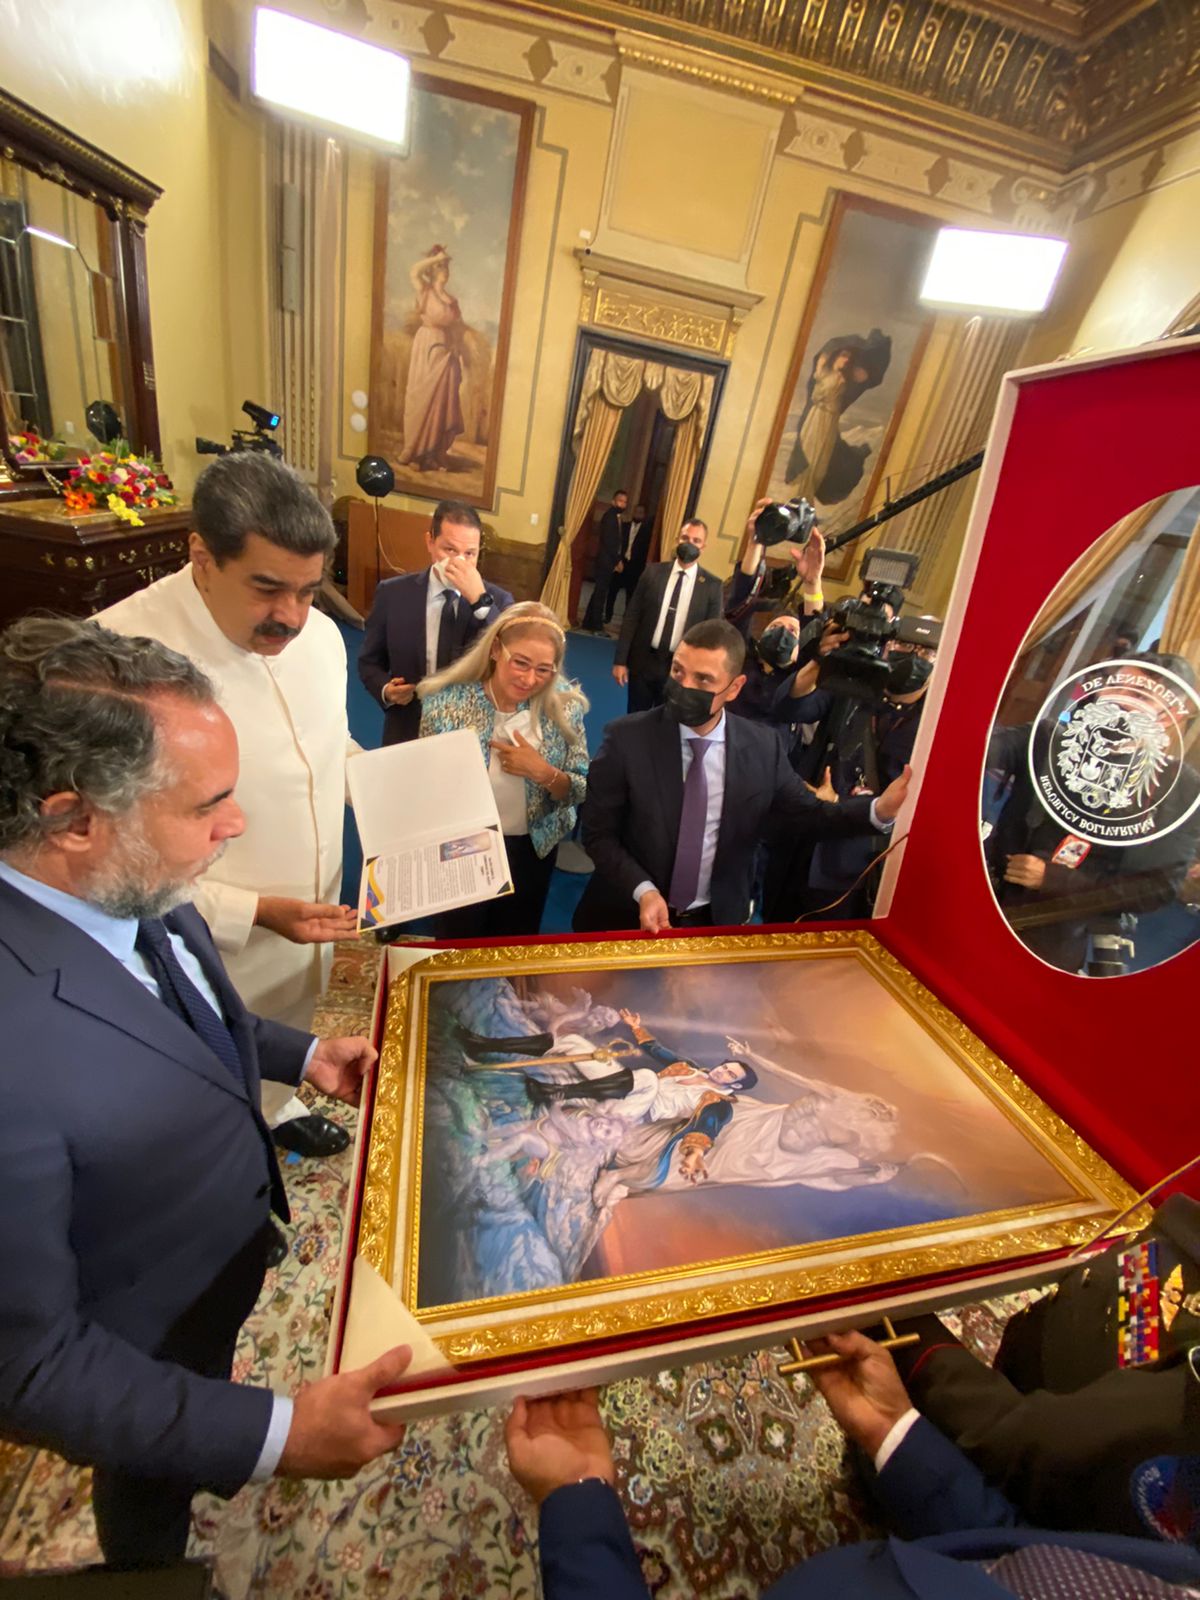 El embajador le obsequio a Maduro un sombrero vueltiao, mientras que Maduro le obsequió a Benedetti un cuadro de Simón Bolívar.